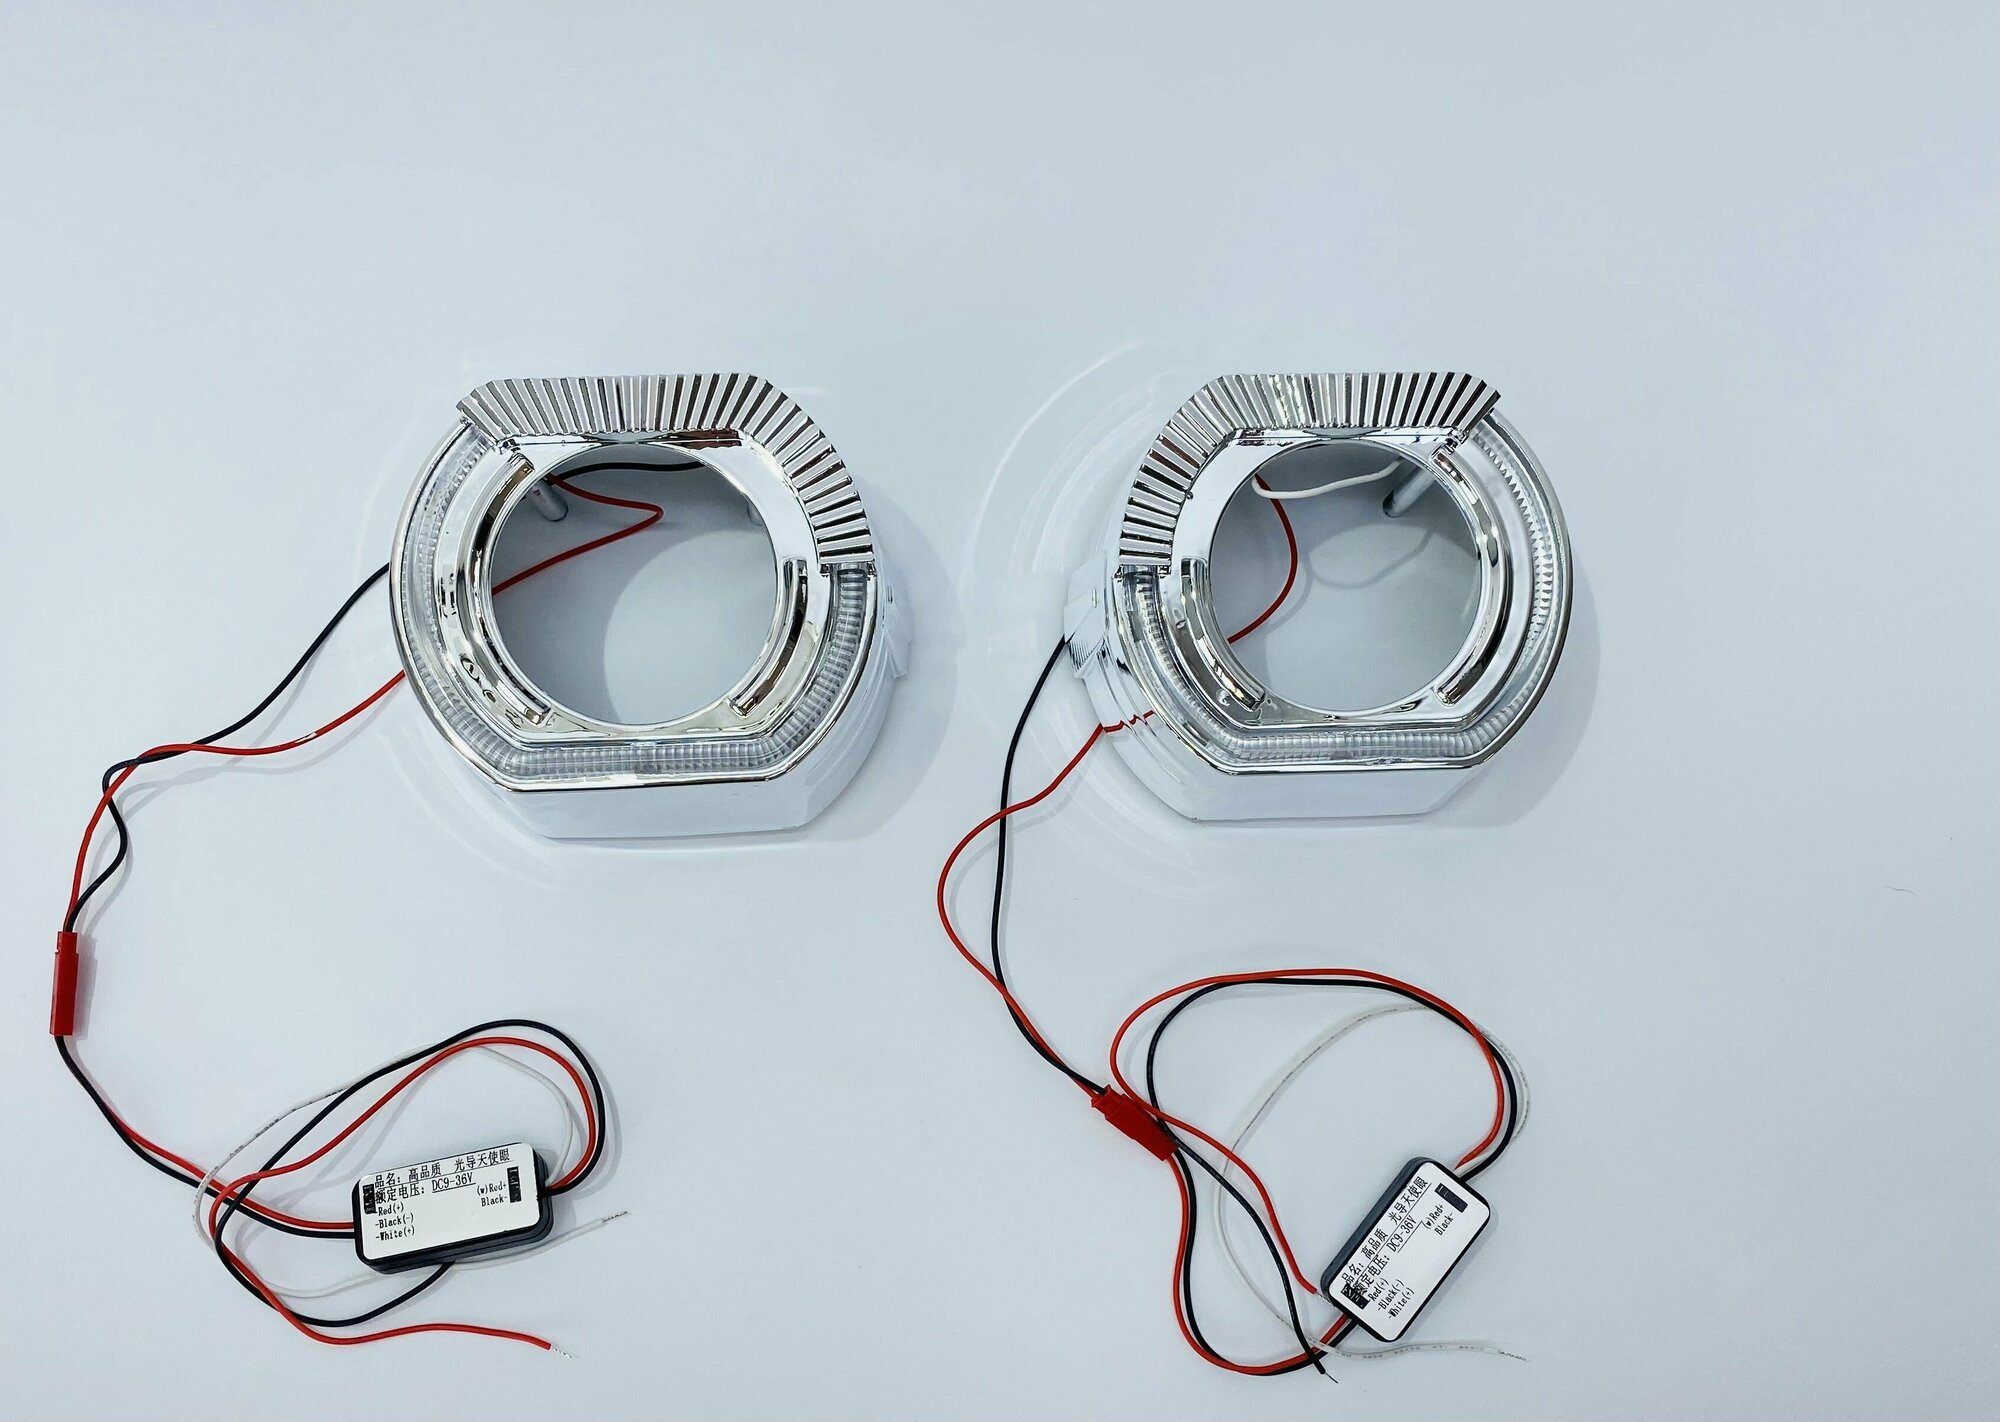 Декоративные бленды (маски) №135GD2 для линз 2.5", с CREE LED габаритами с функцией притухания, комплект 2 шт